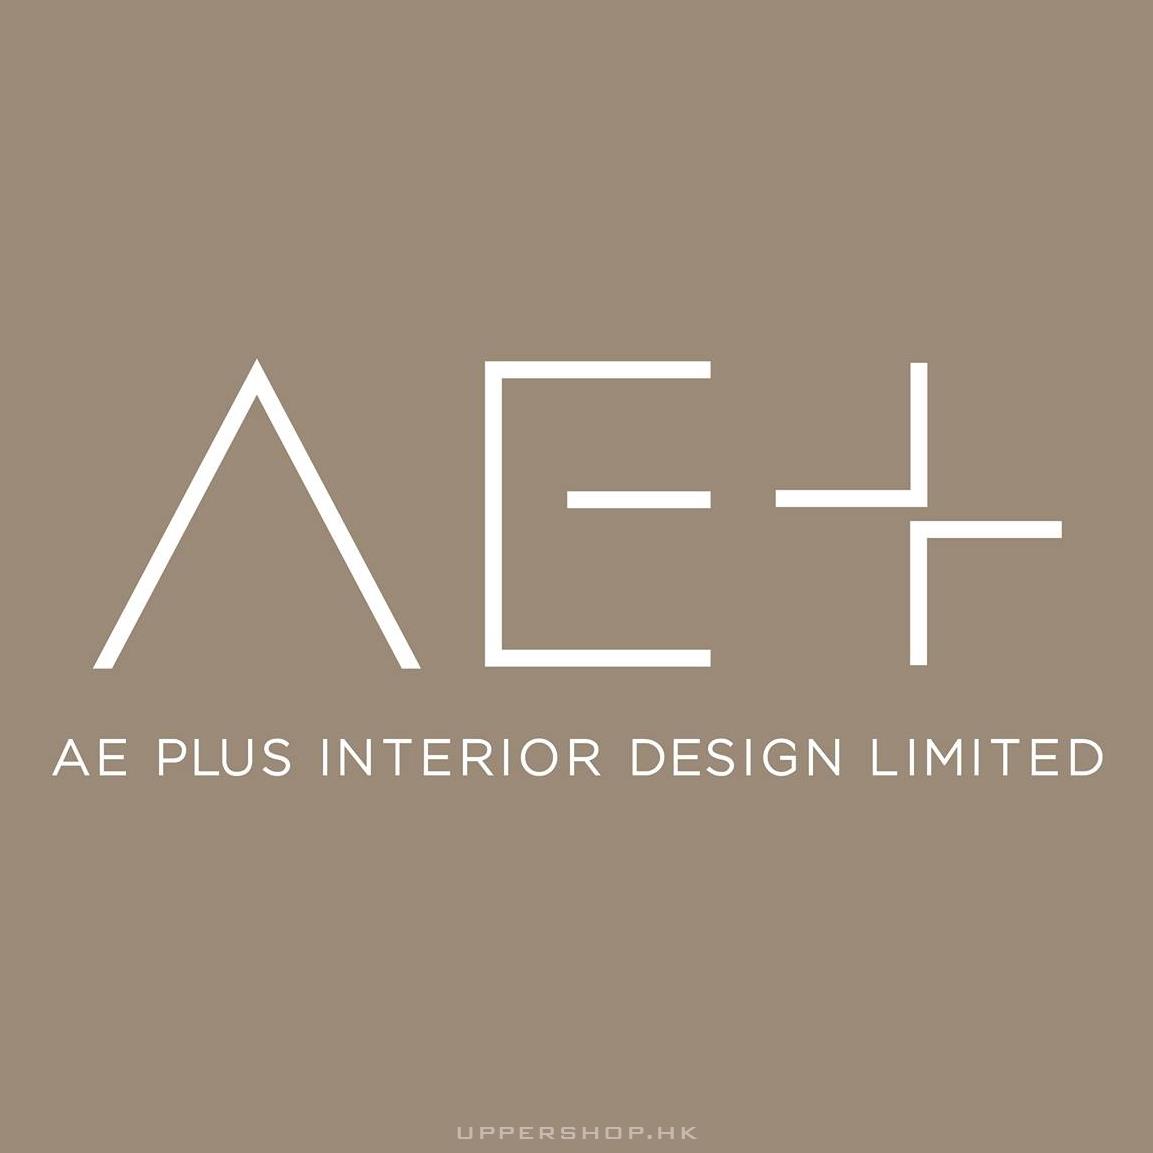 AE Plus Interior Design Limited